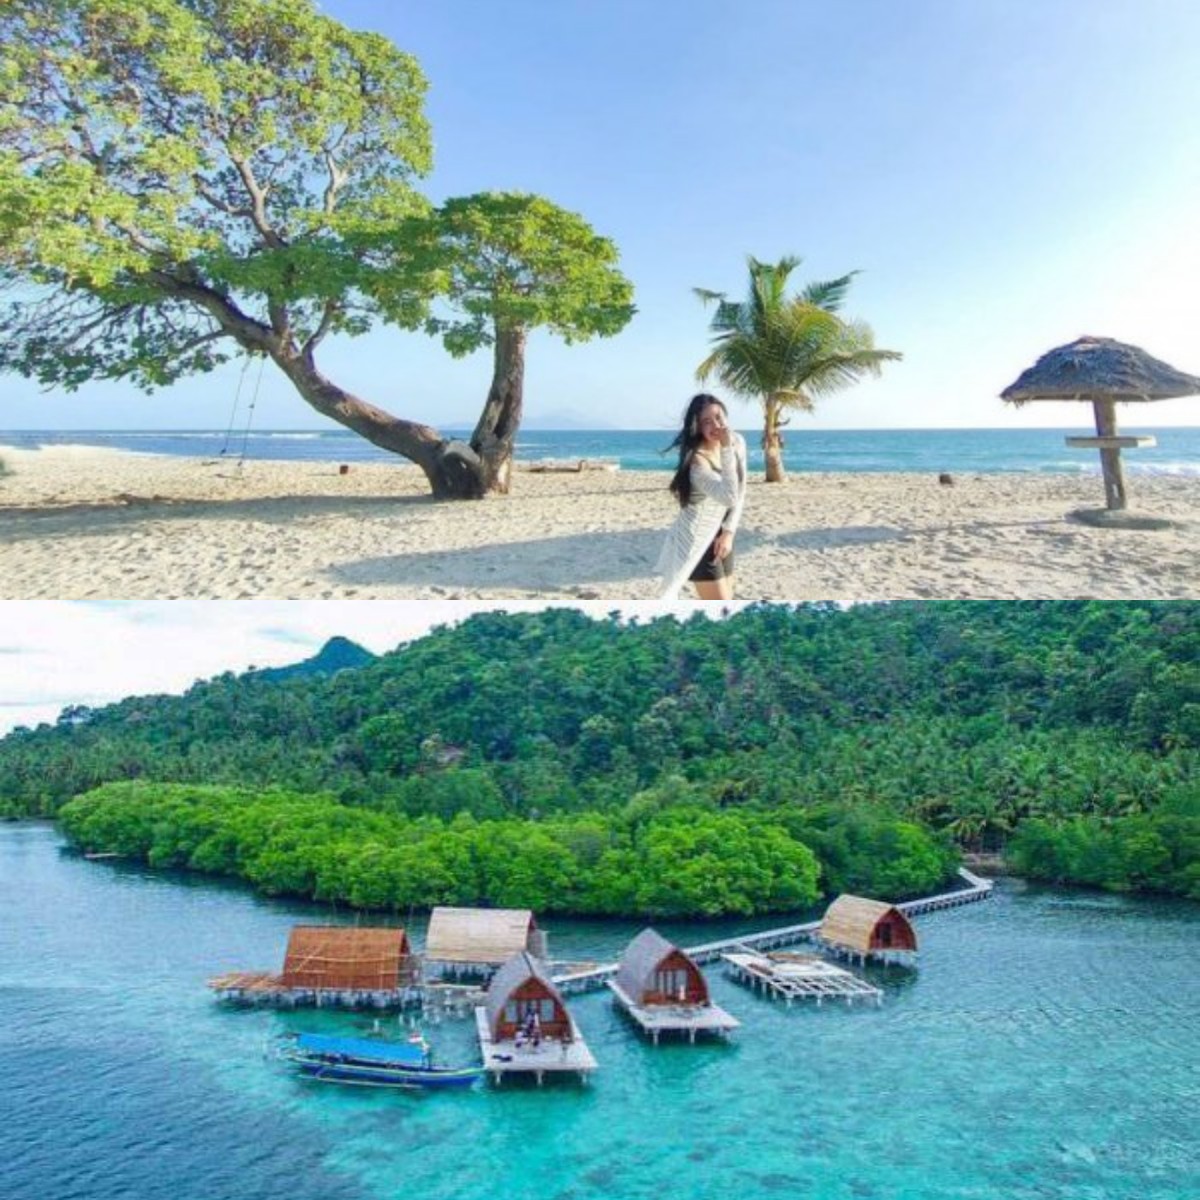 Wajib Banget Kamu Kunjungi! Inilah 5 Rekomendasi Wisata Pantai Paling Hits di Lampung Selatan 